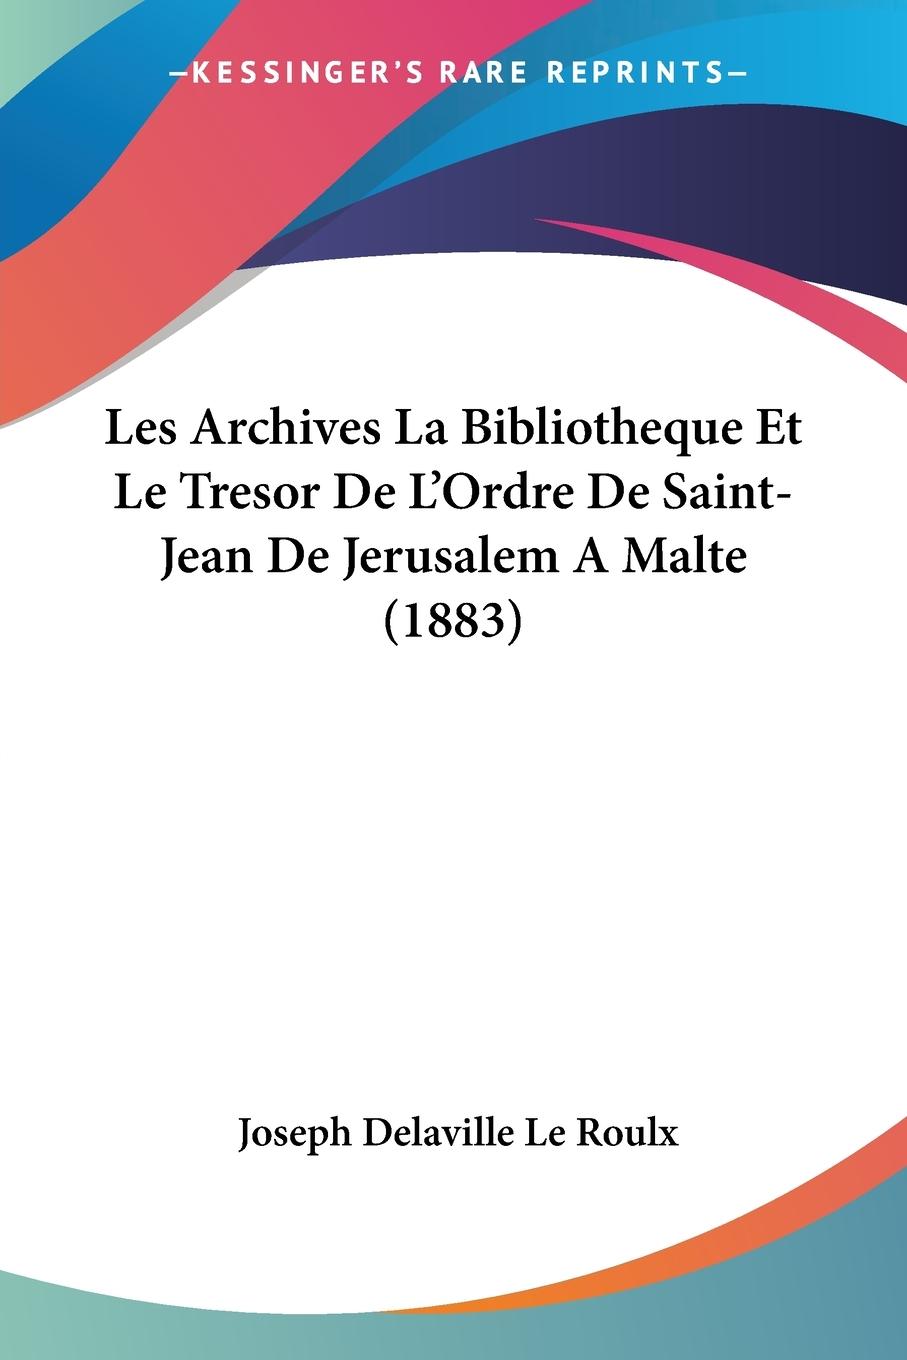 Les Archives La Bibliotheque Et Le Tresor De L Ordre De Saint-Jean De Jerusalem A Malte (1883) - Le Roulx, Joseph Delaville